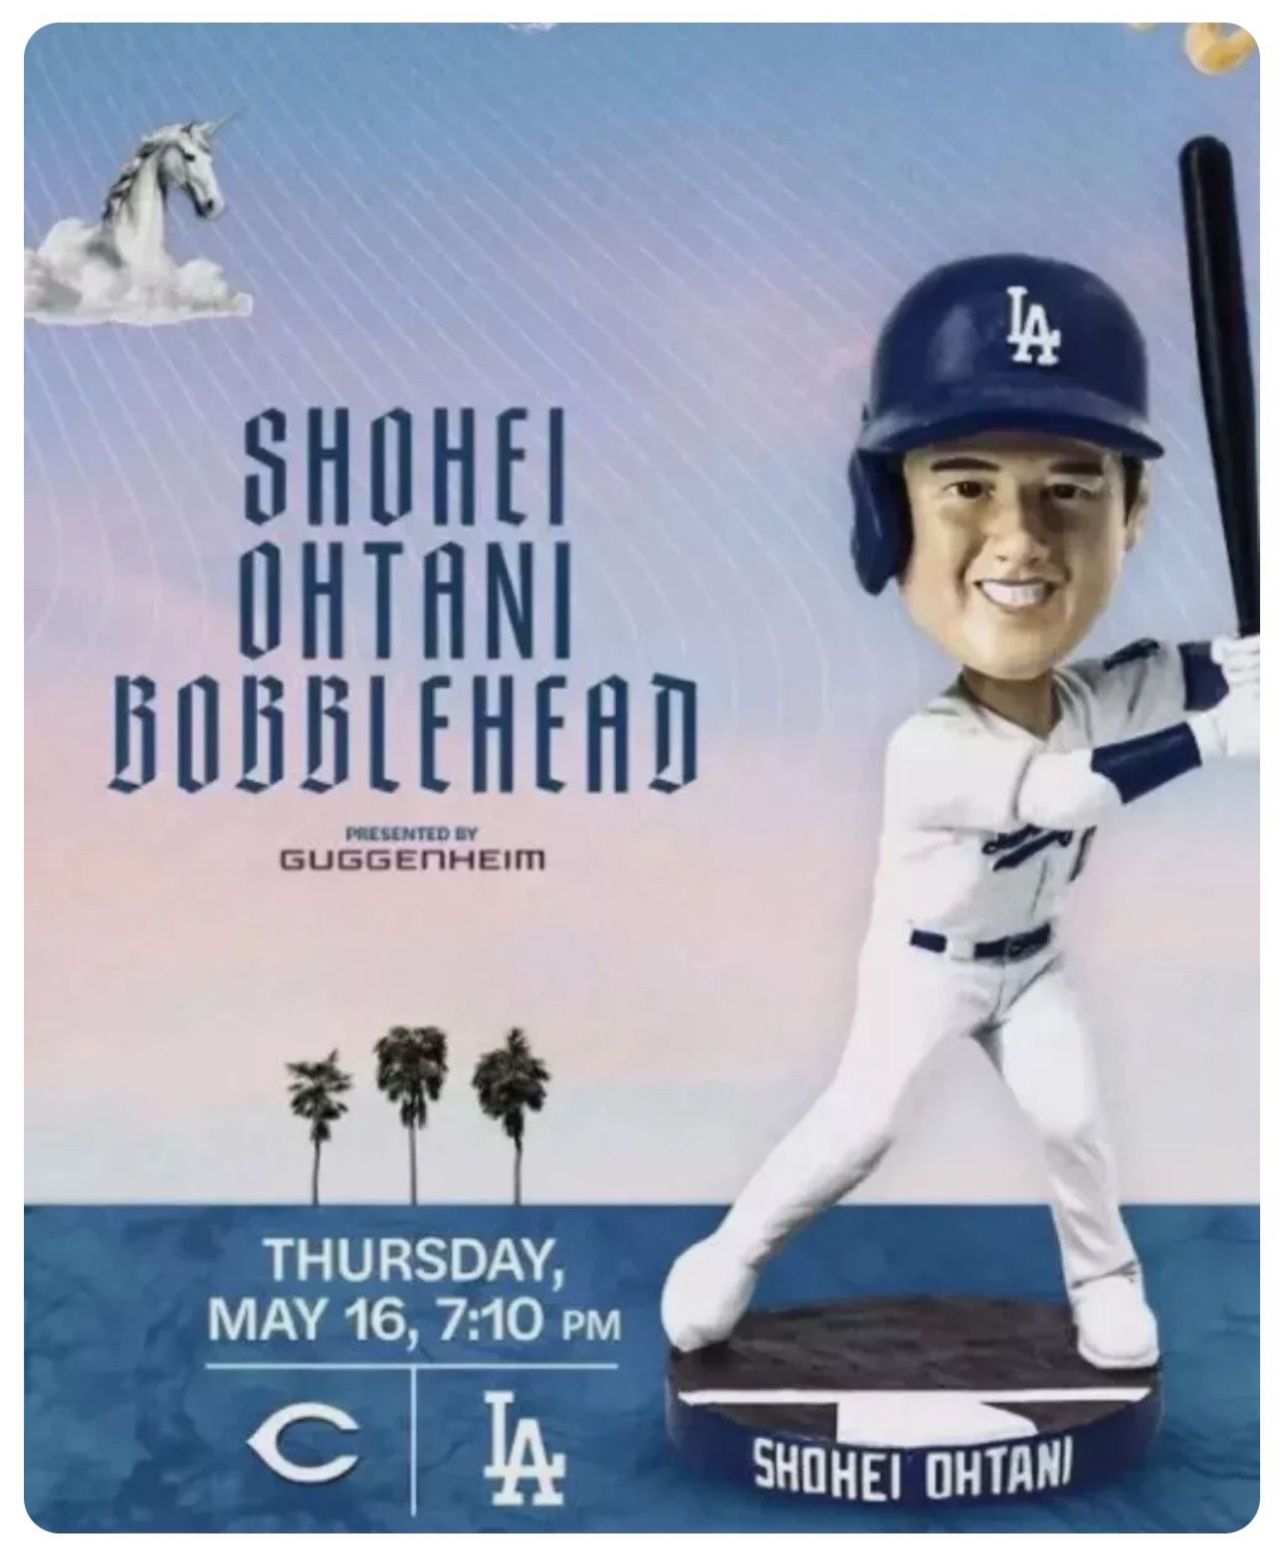 Ohtani Bobblehead Night. Thursday 5/16 Dodger Game 